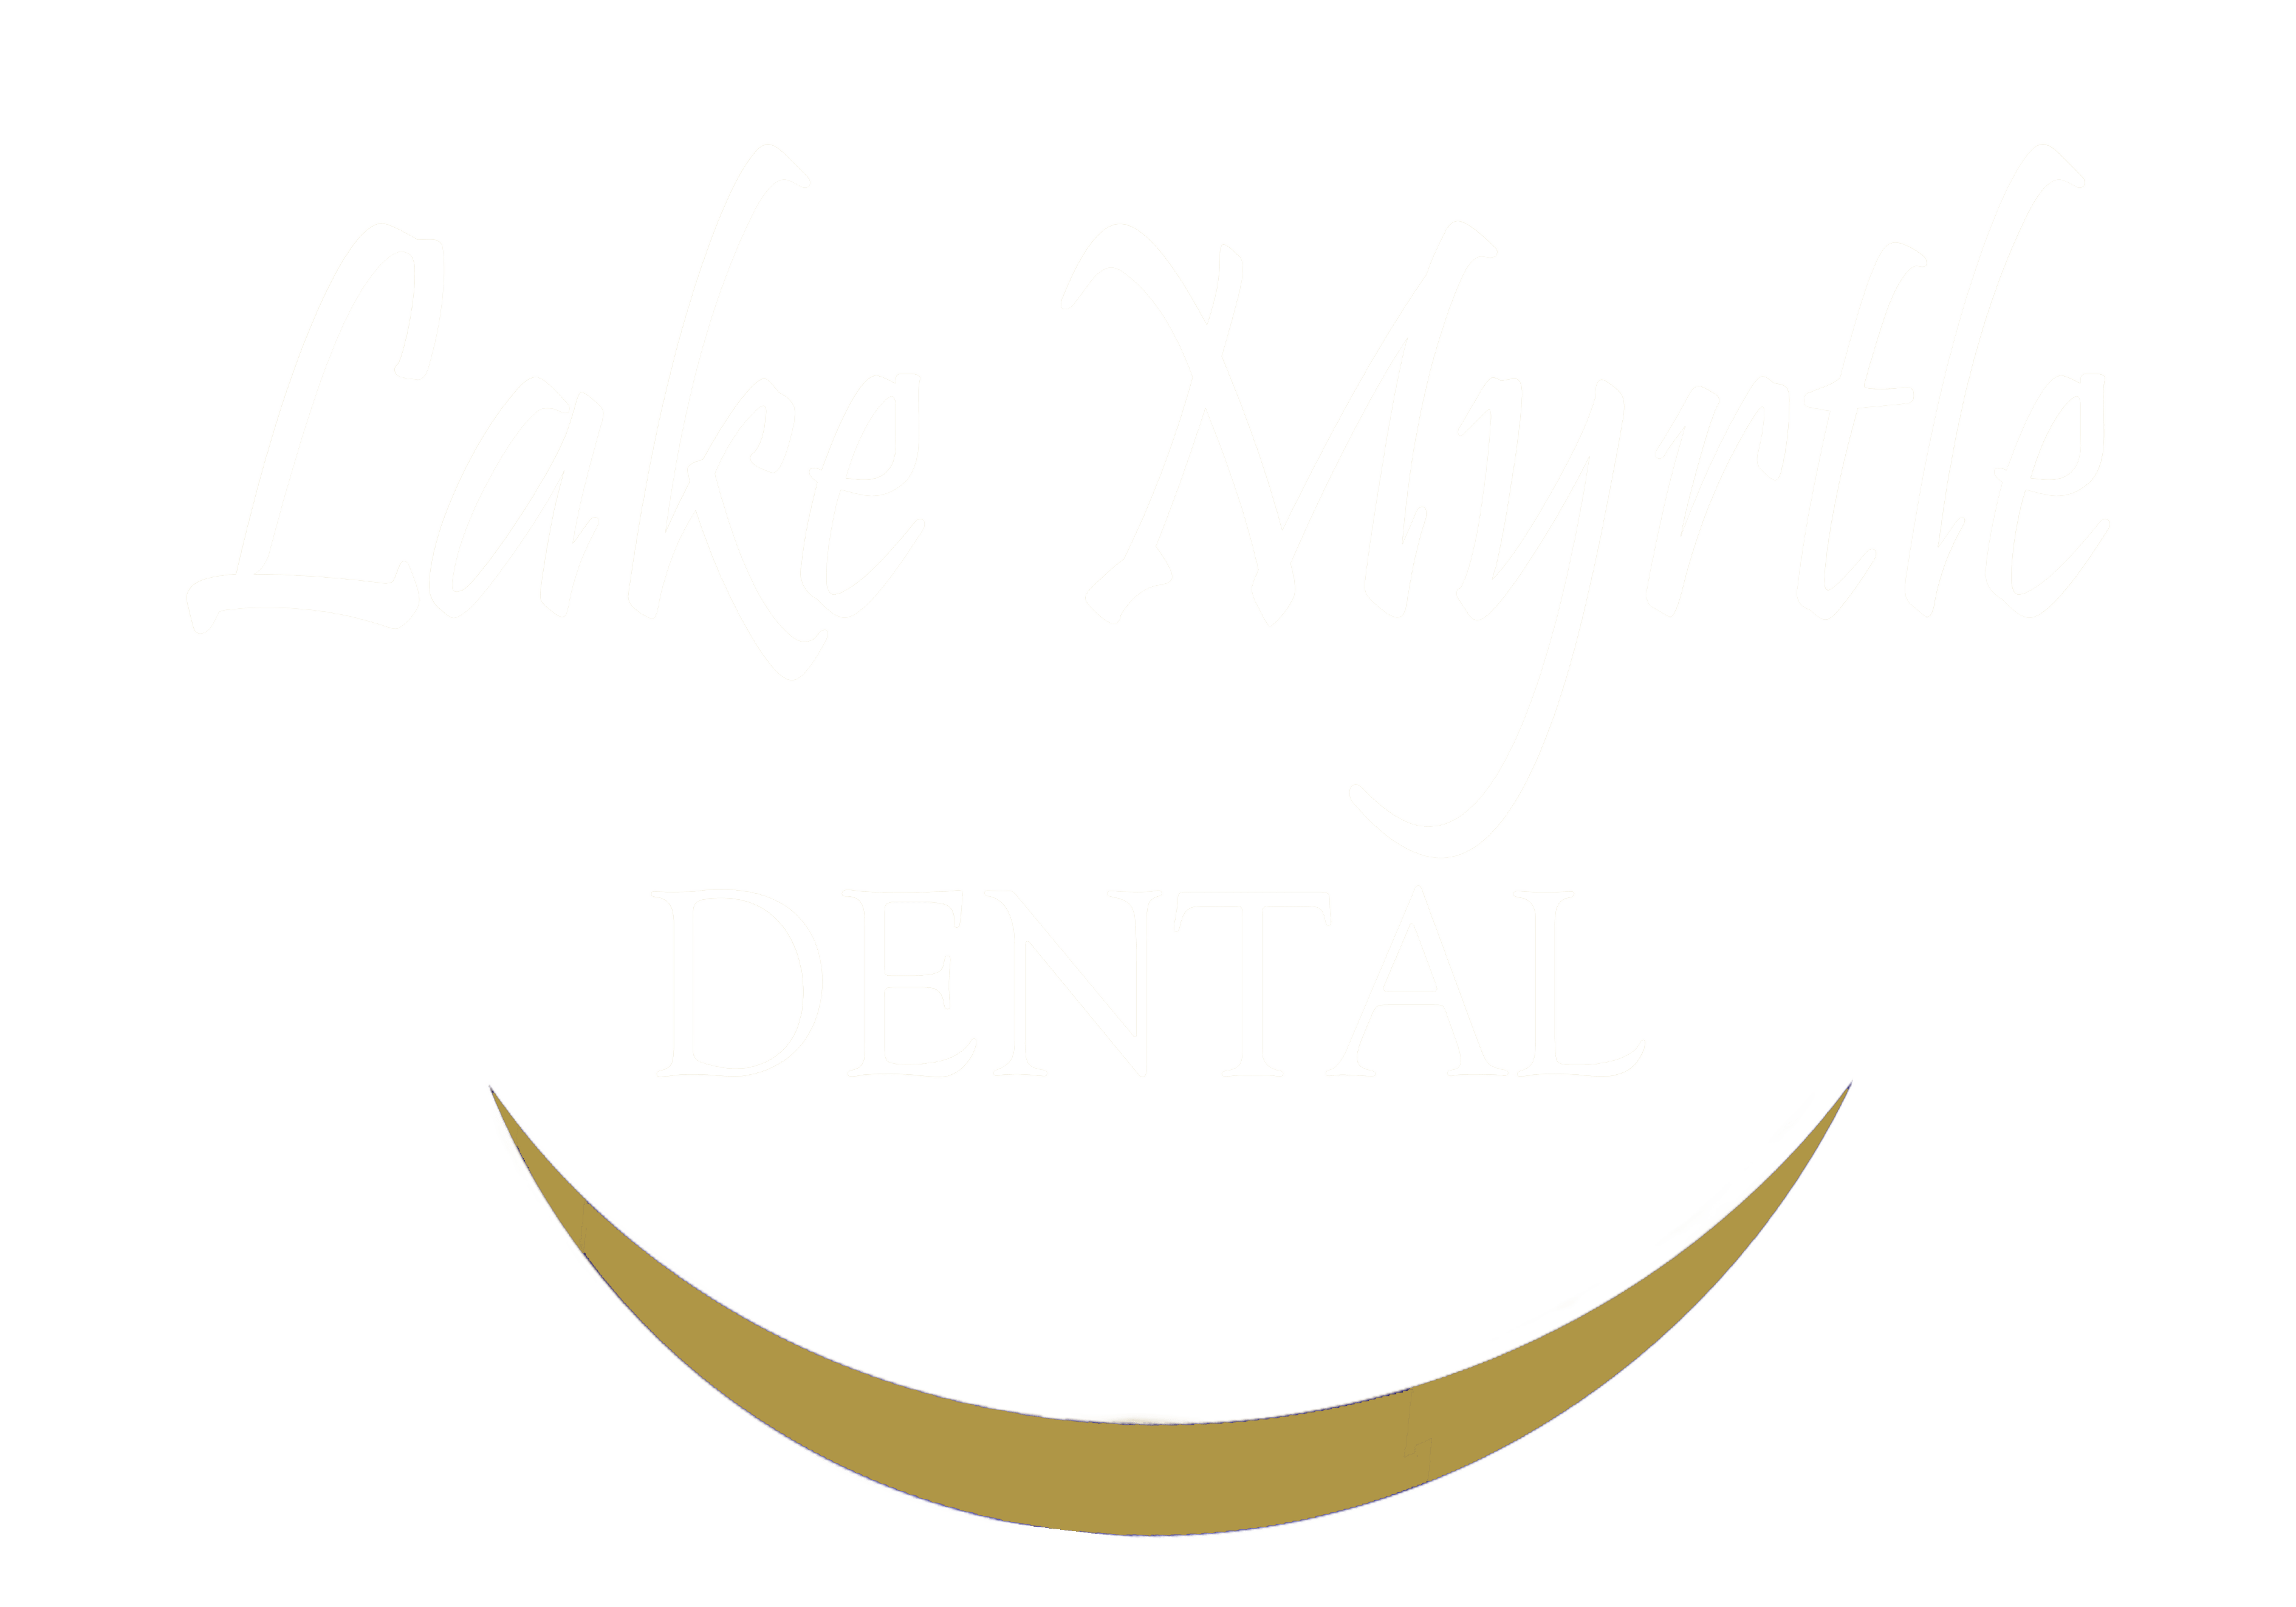 Lake Myrtle Dental